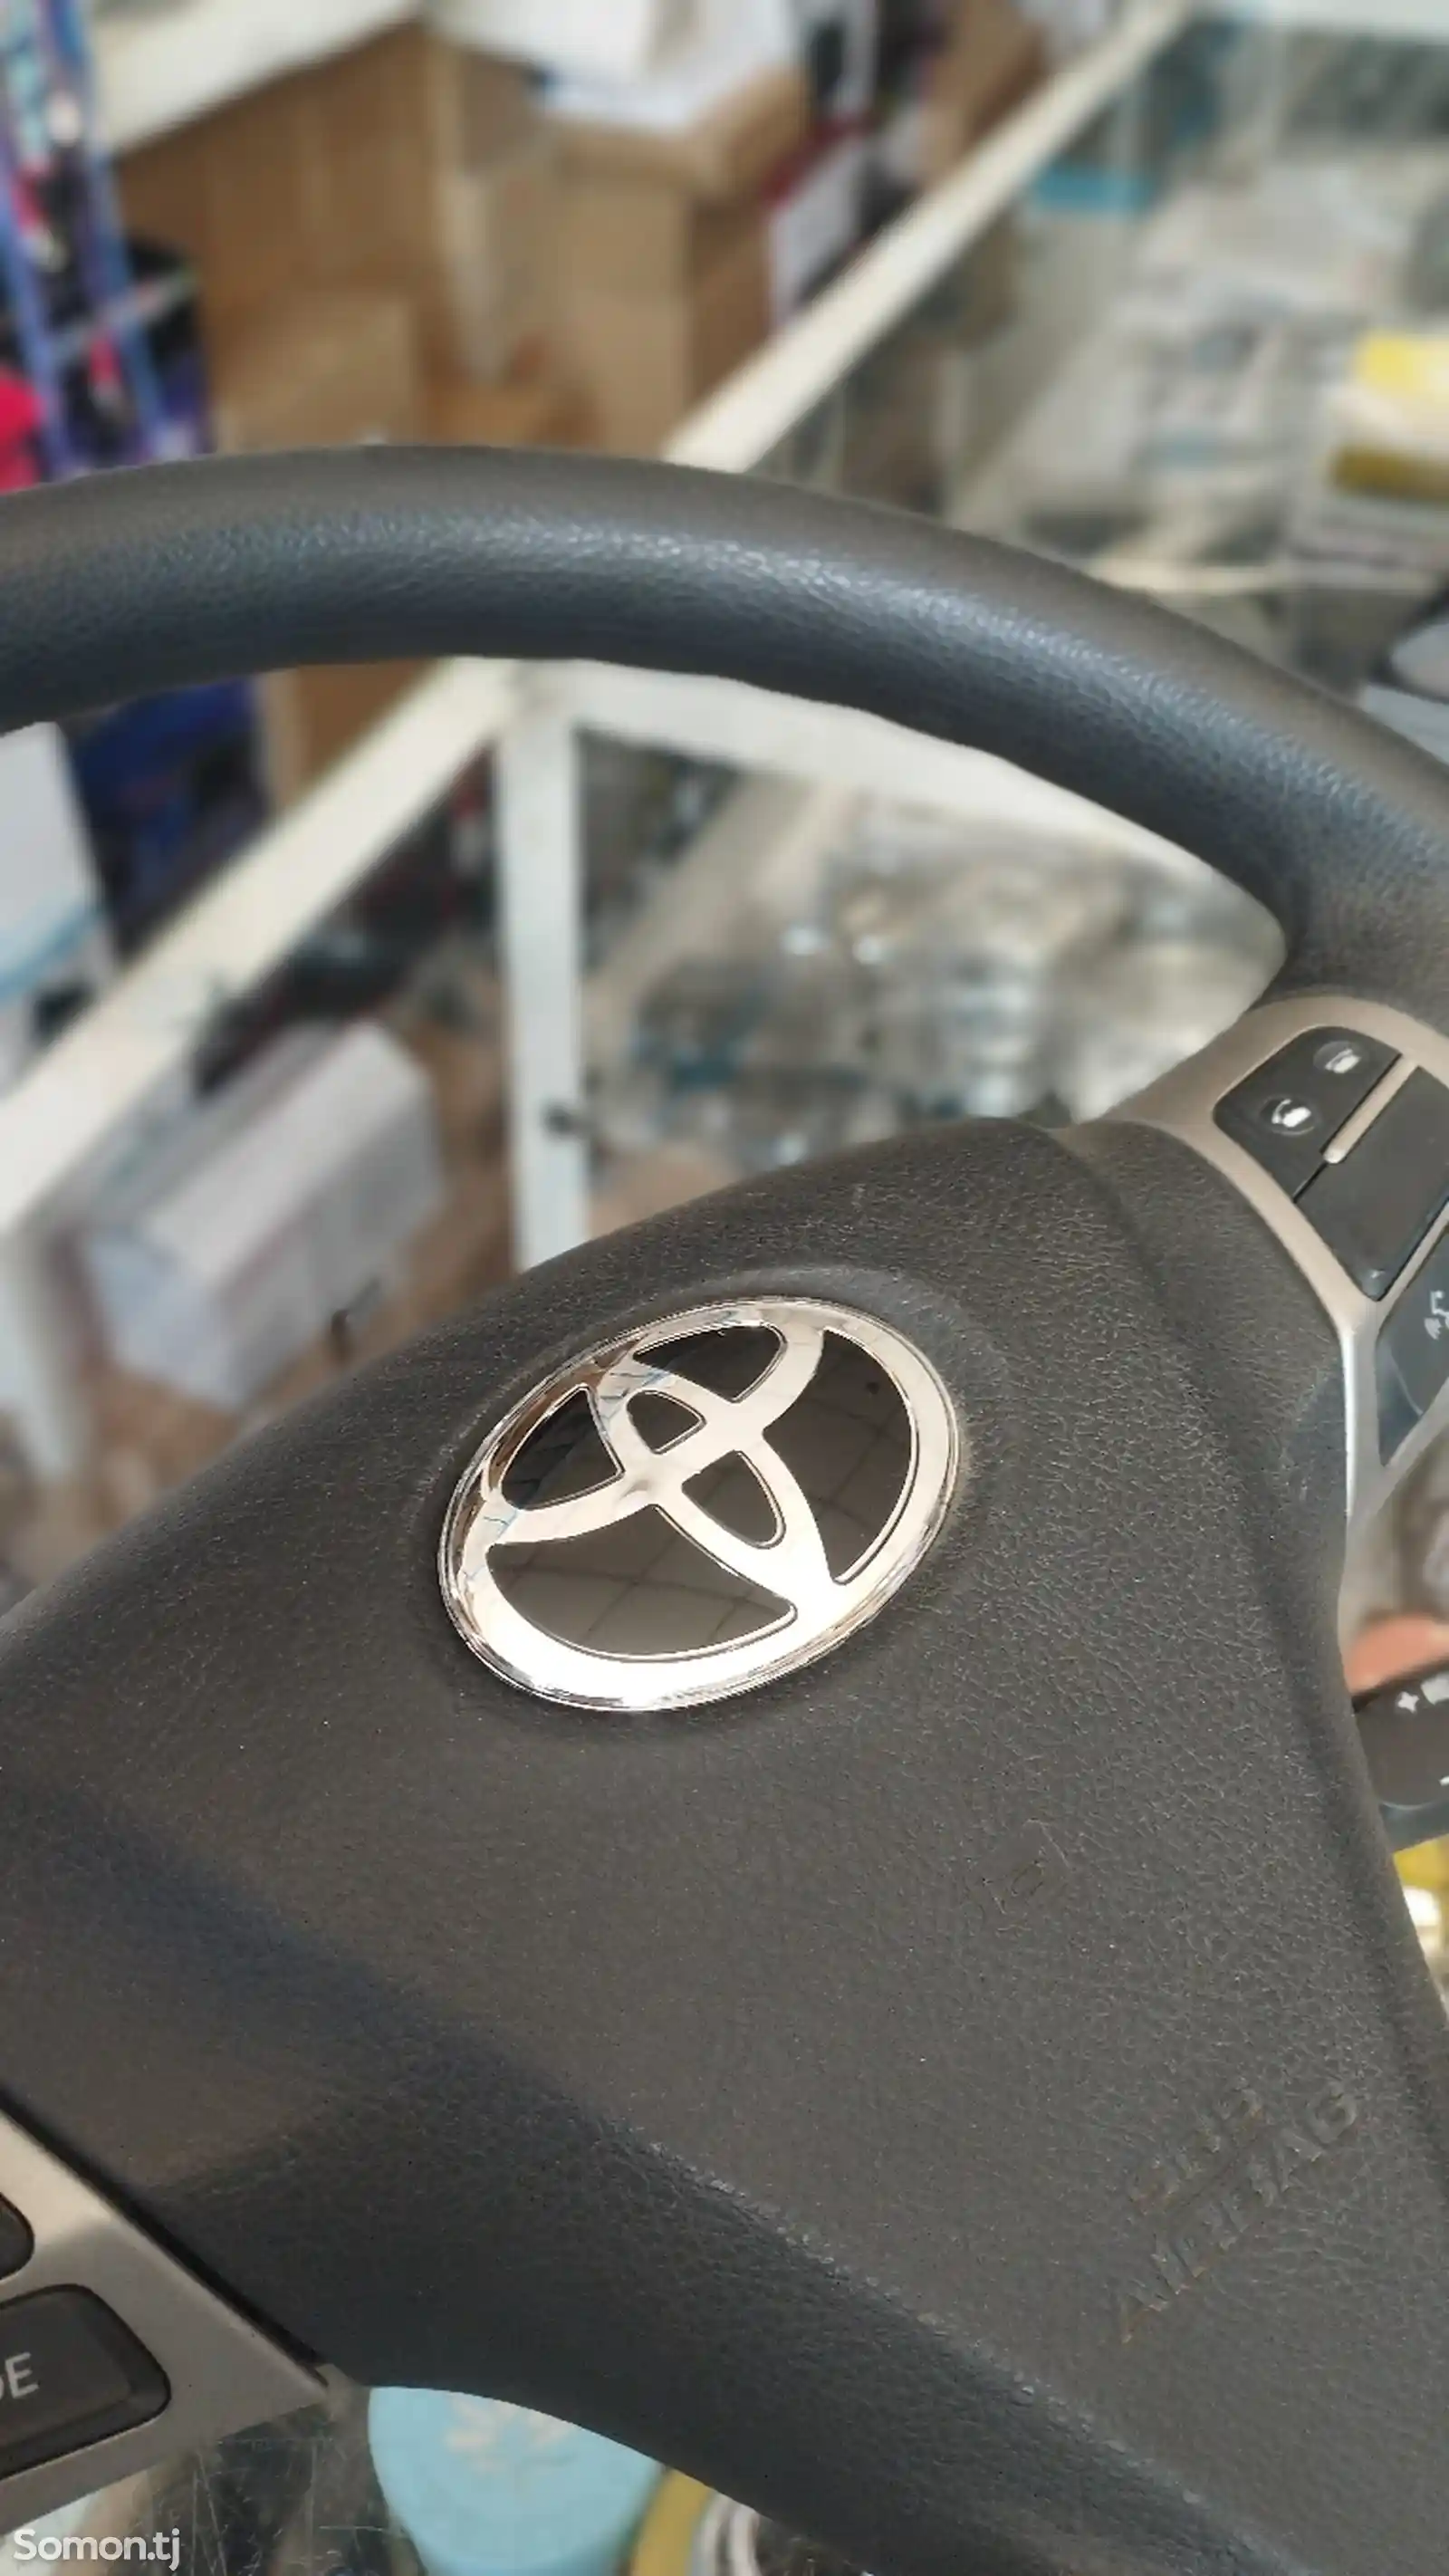 Штаны руля на Toyota-1